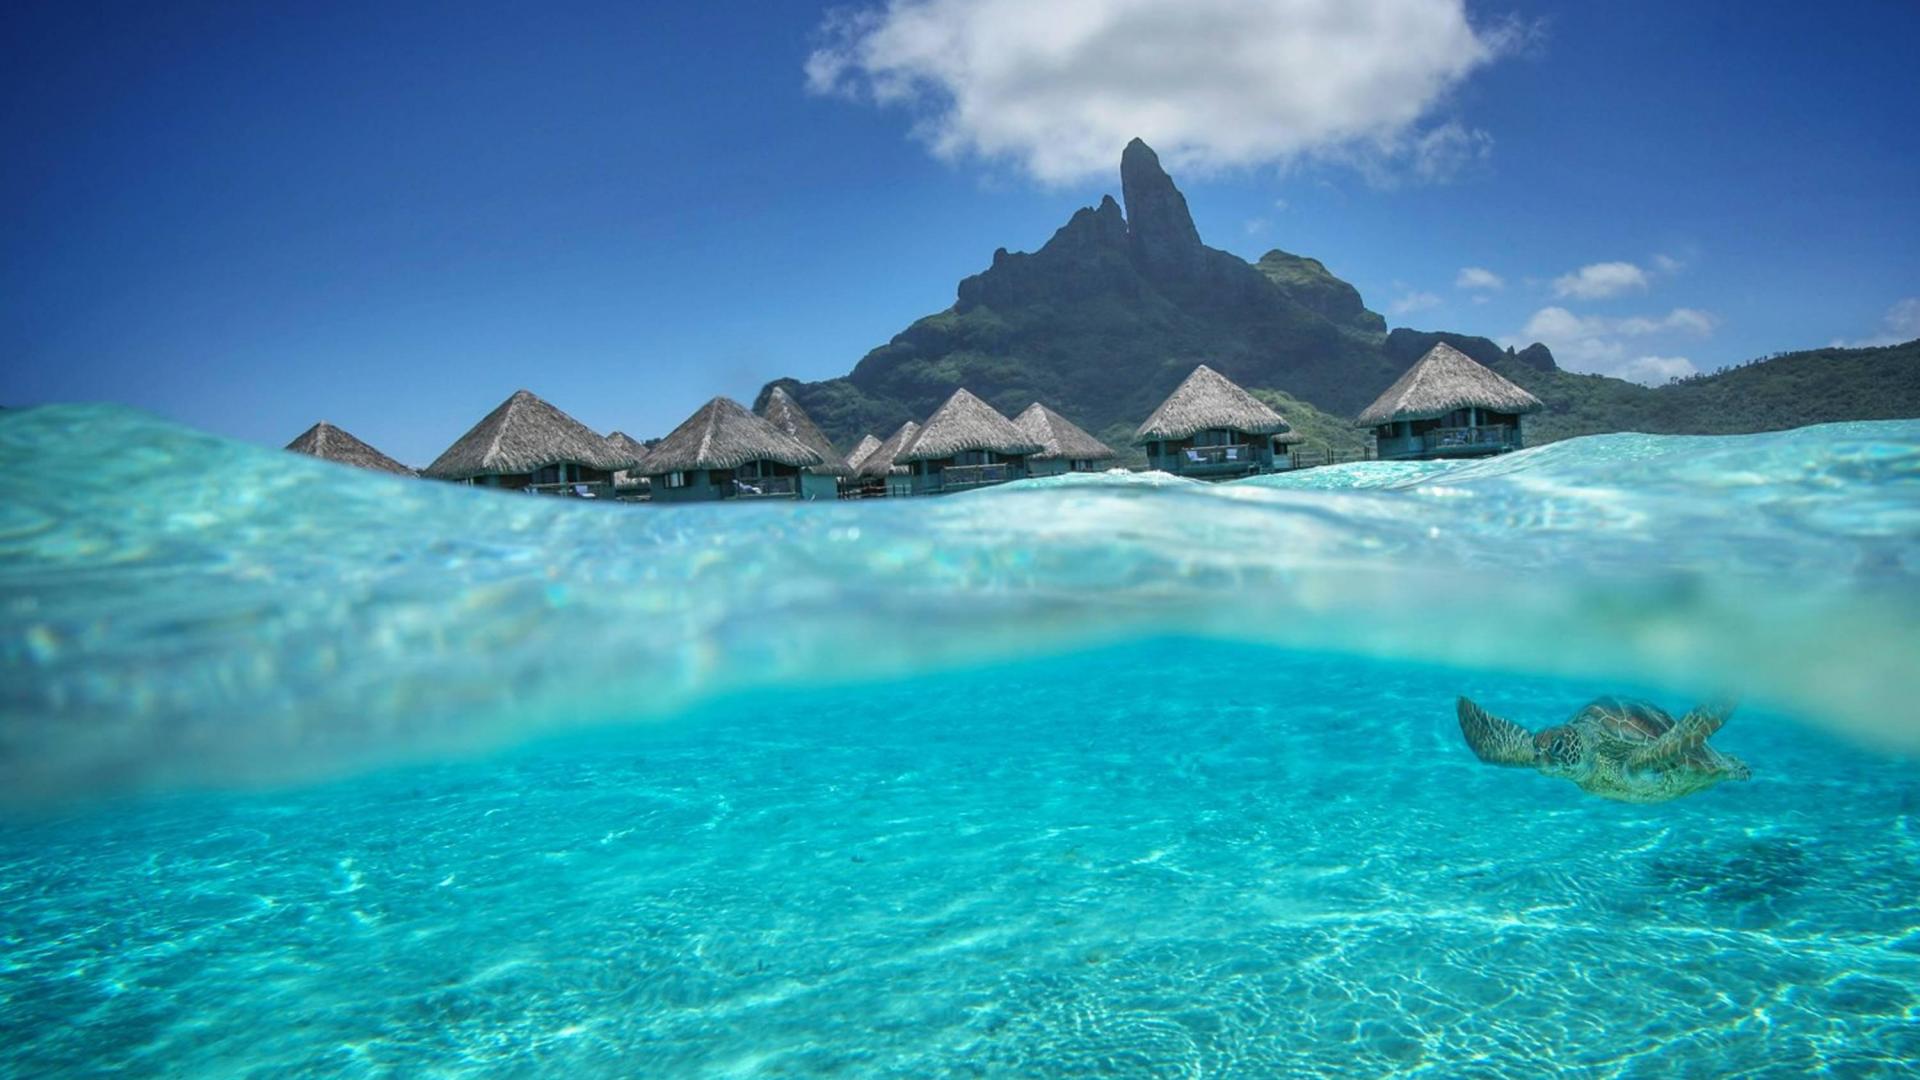 Blue Lagoon Dream Island Bora Tahiti Hq Wallpaper